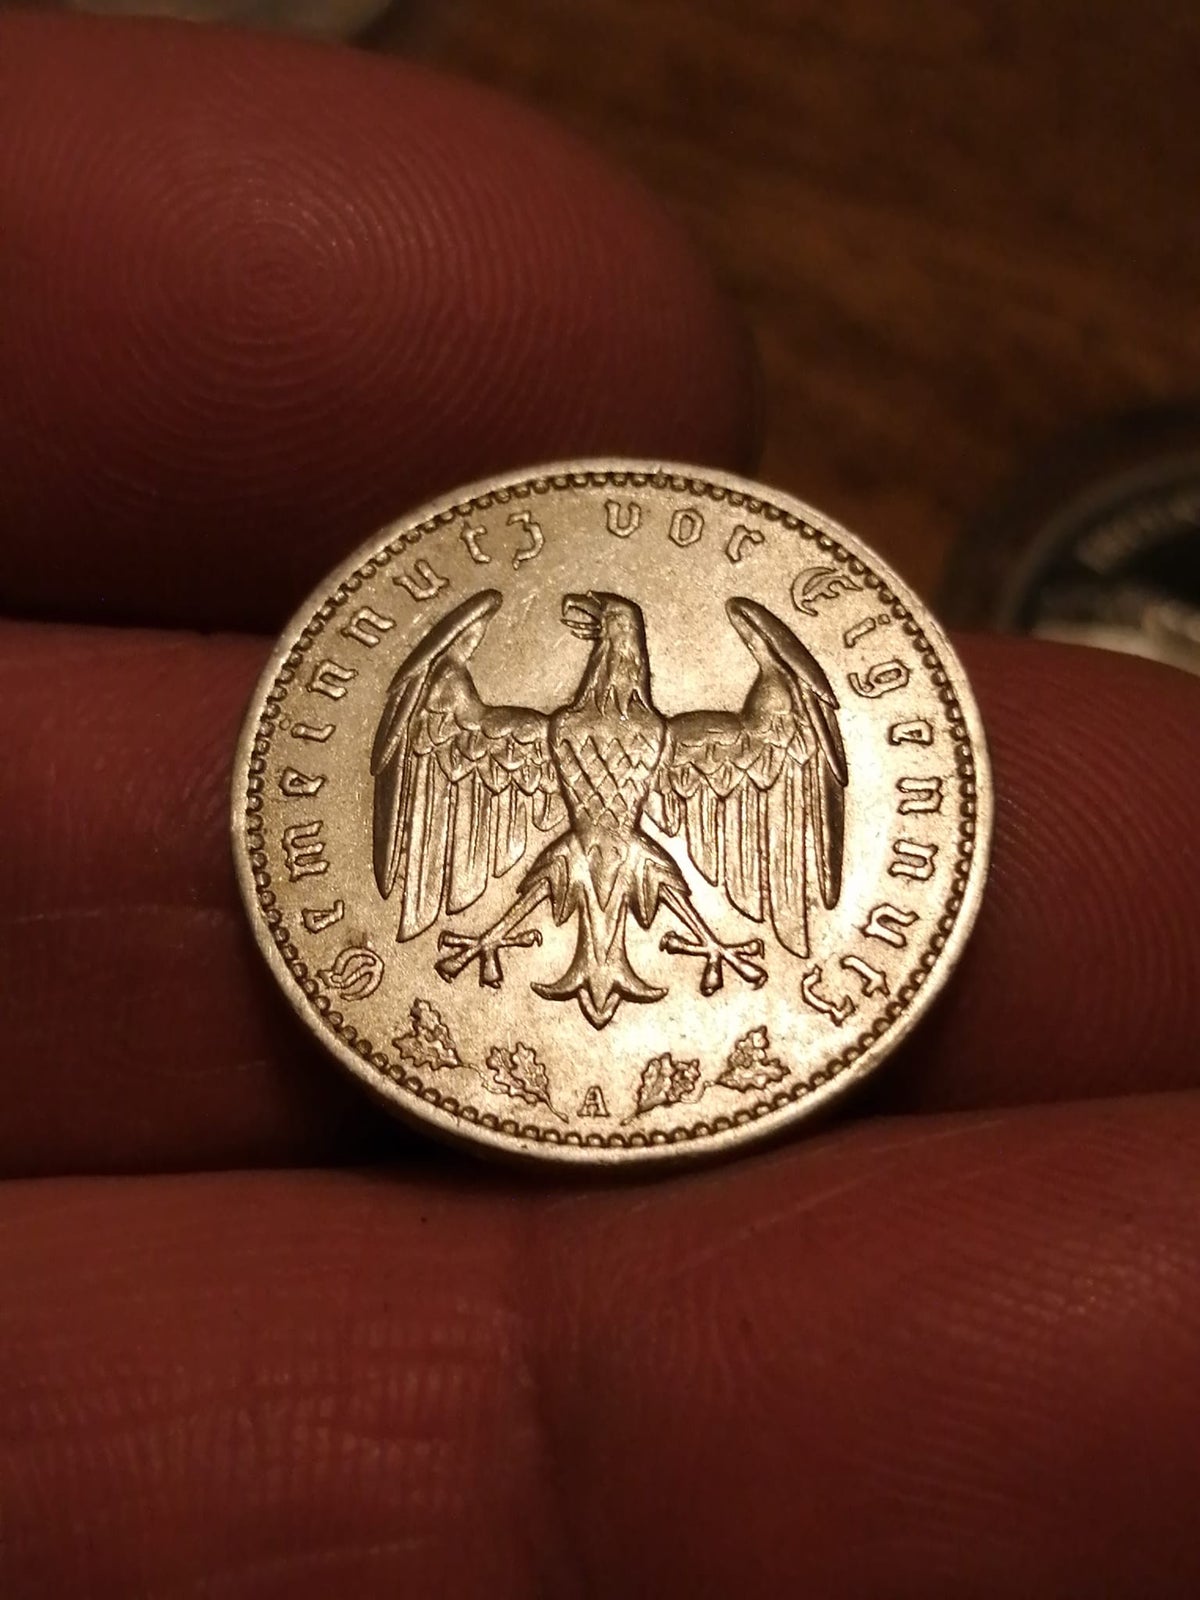 Vesteuropa, mønter, 1 mark